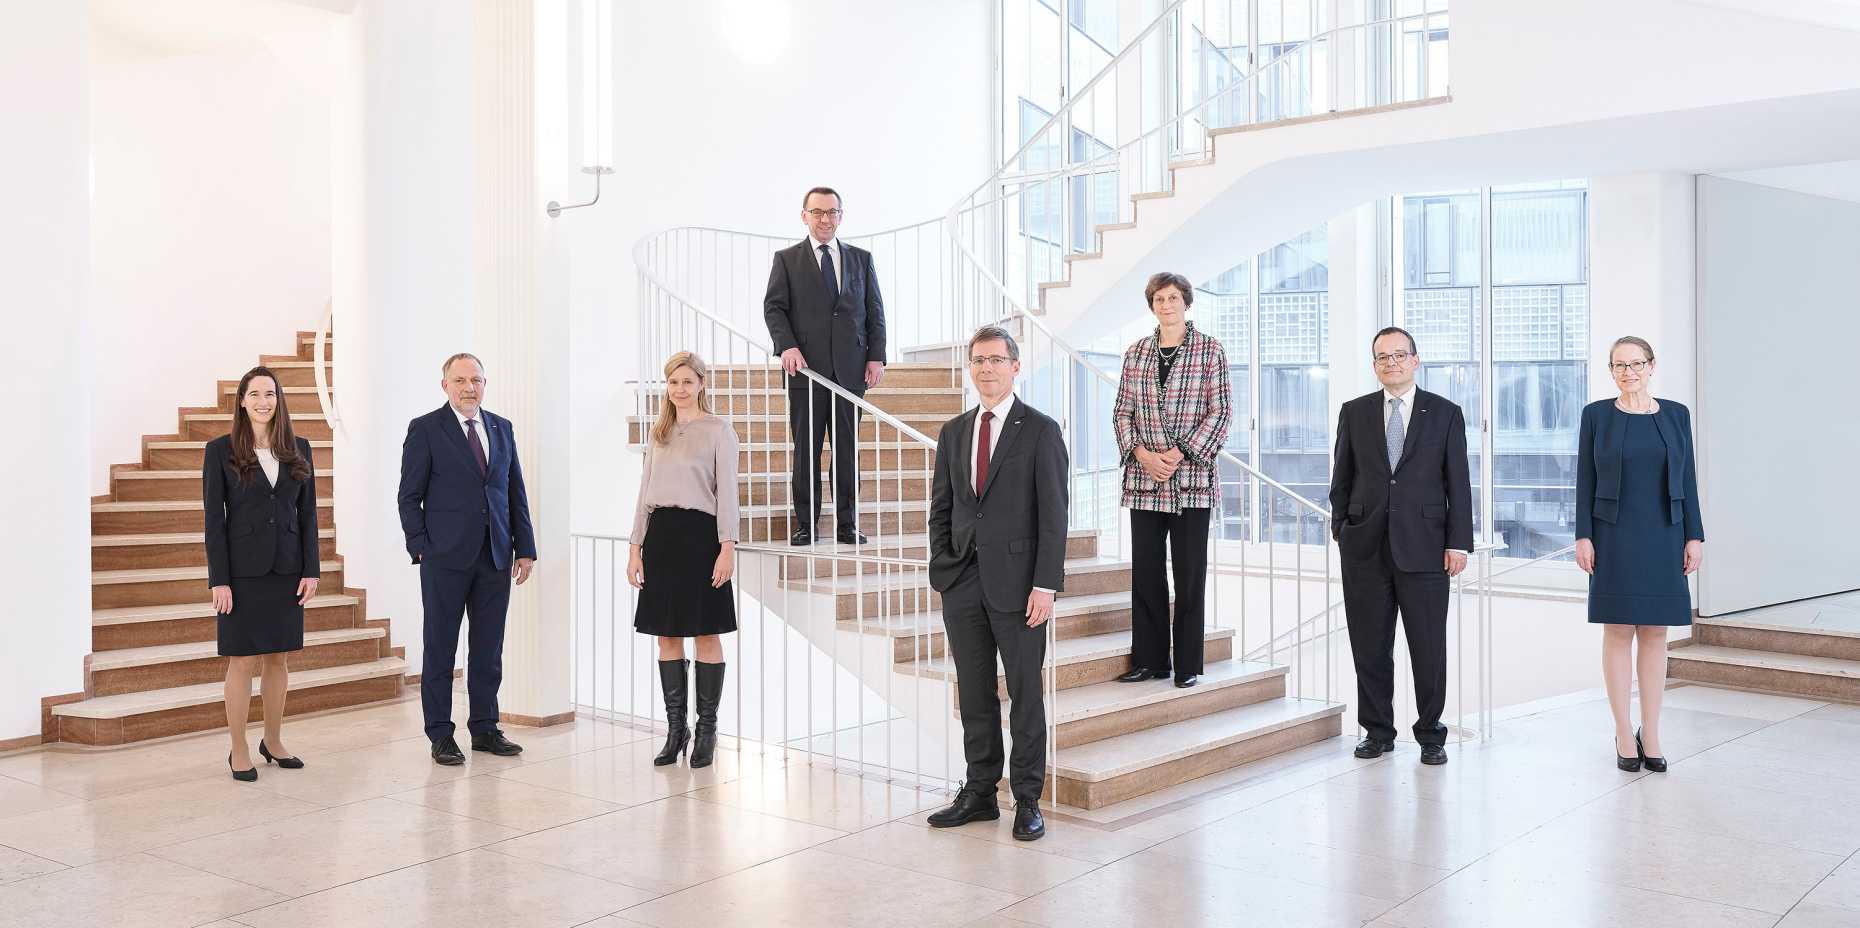 The Executive Board of ETH Zurich 2021 (Image: ETH Zurich / Markus Bertschi)